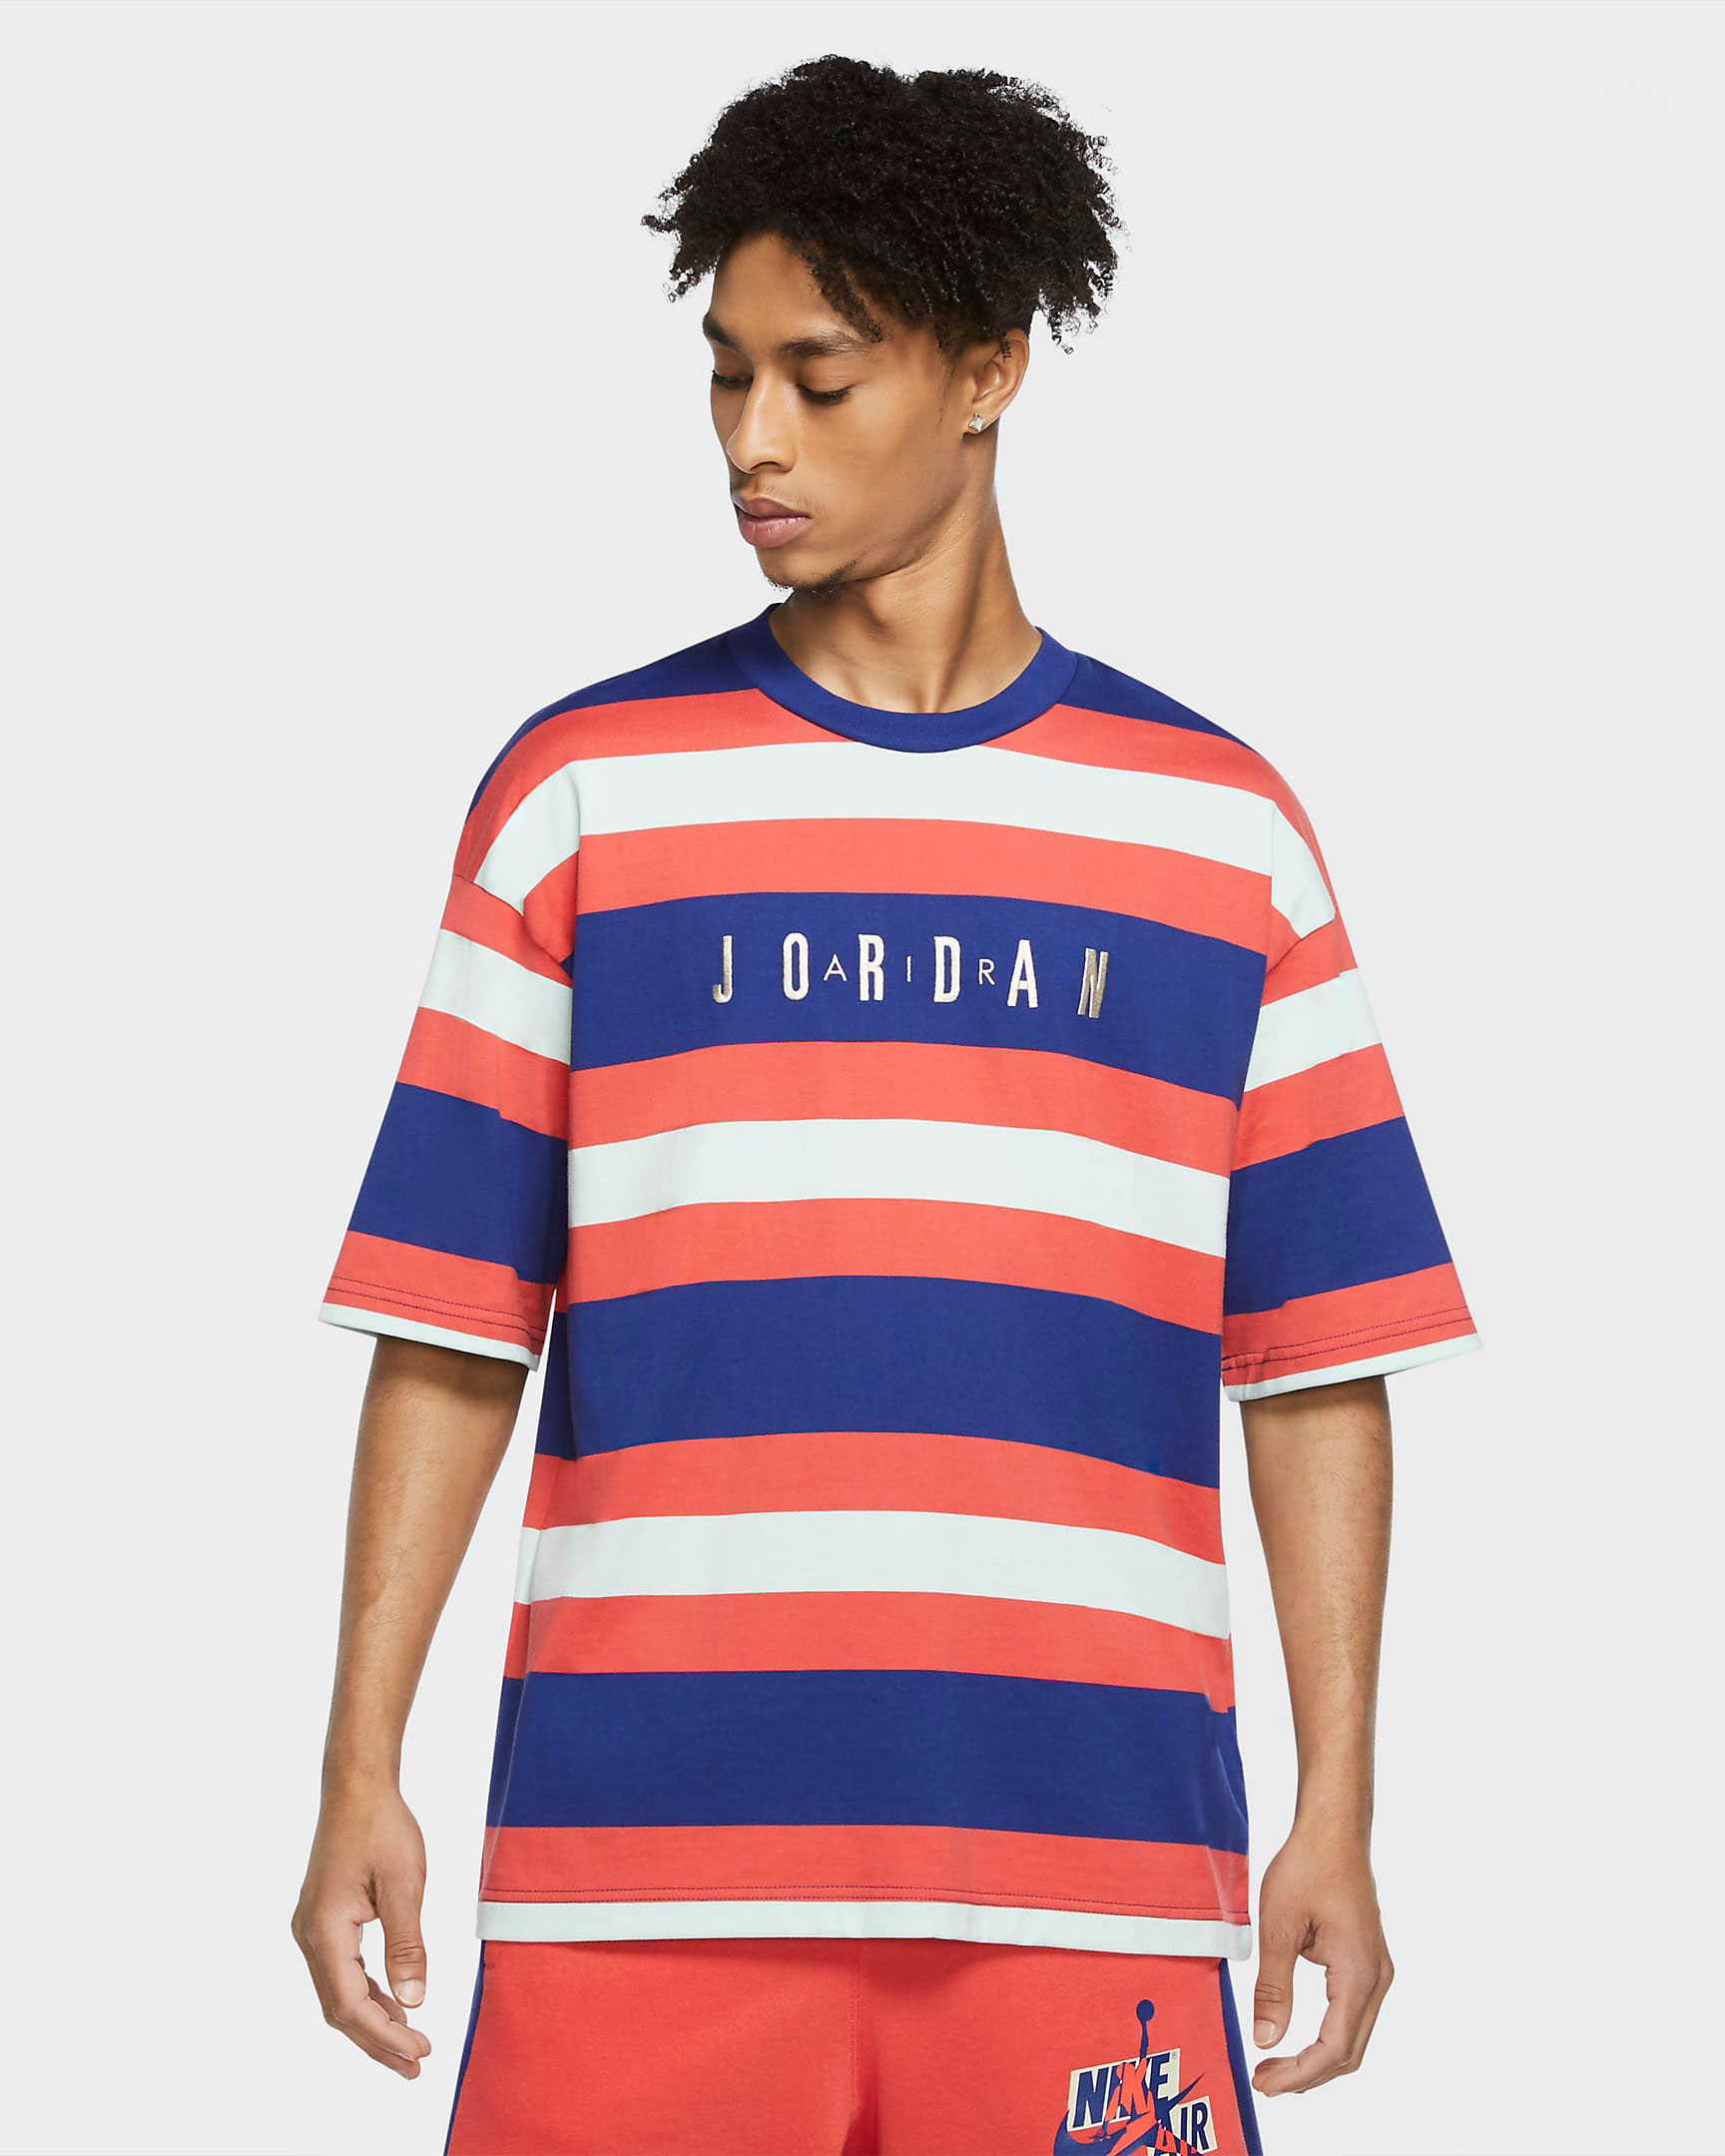 jordan-sport-dna-striped-shirt-infrared